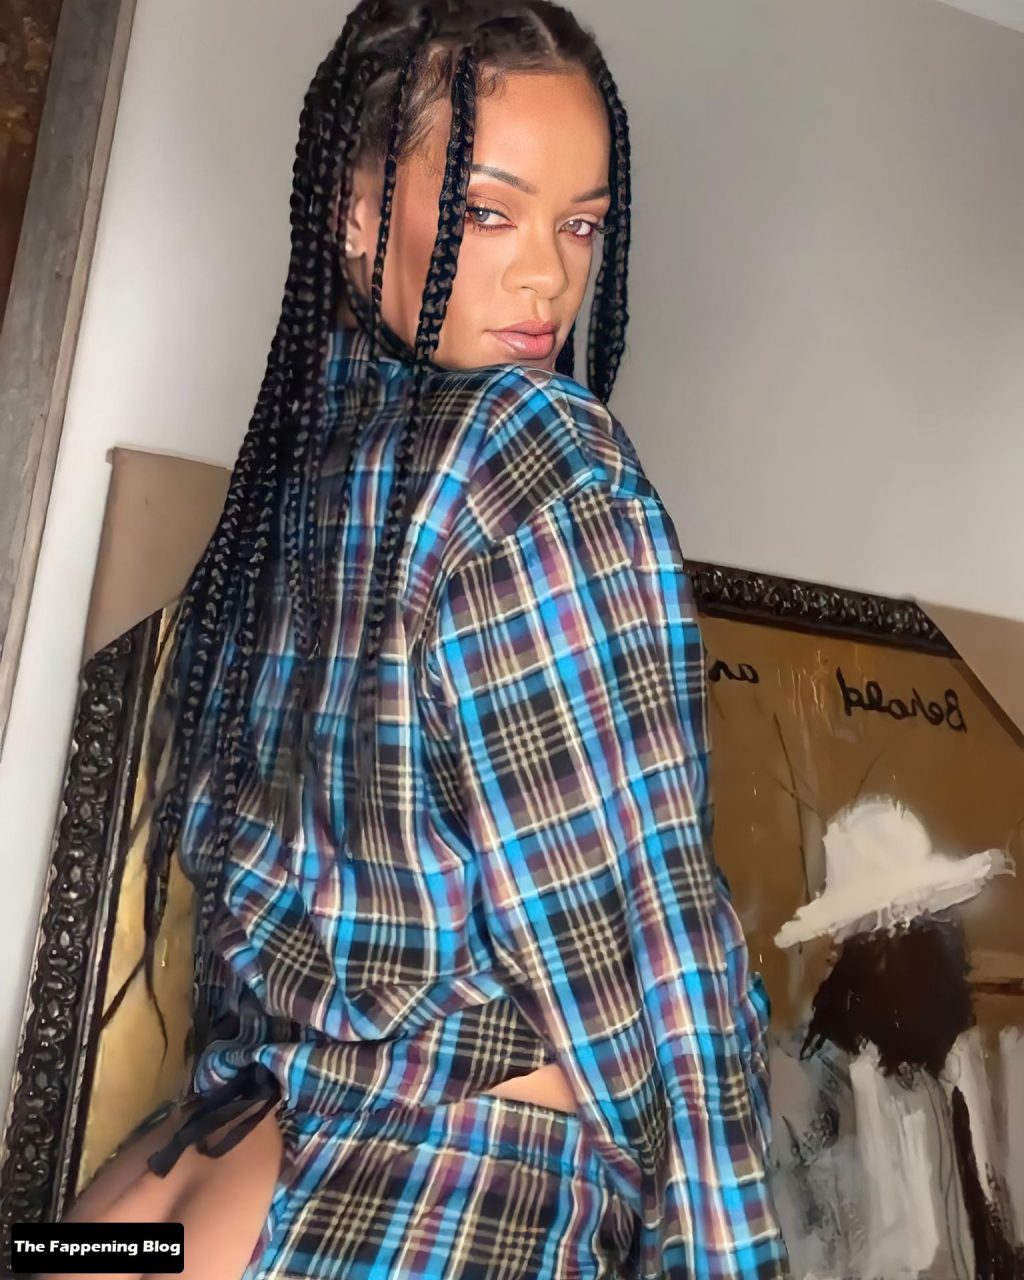 Rihanna Sexy Collection (20 Photos)